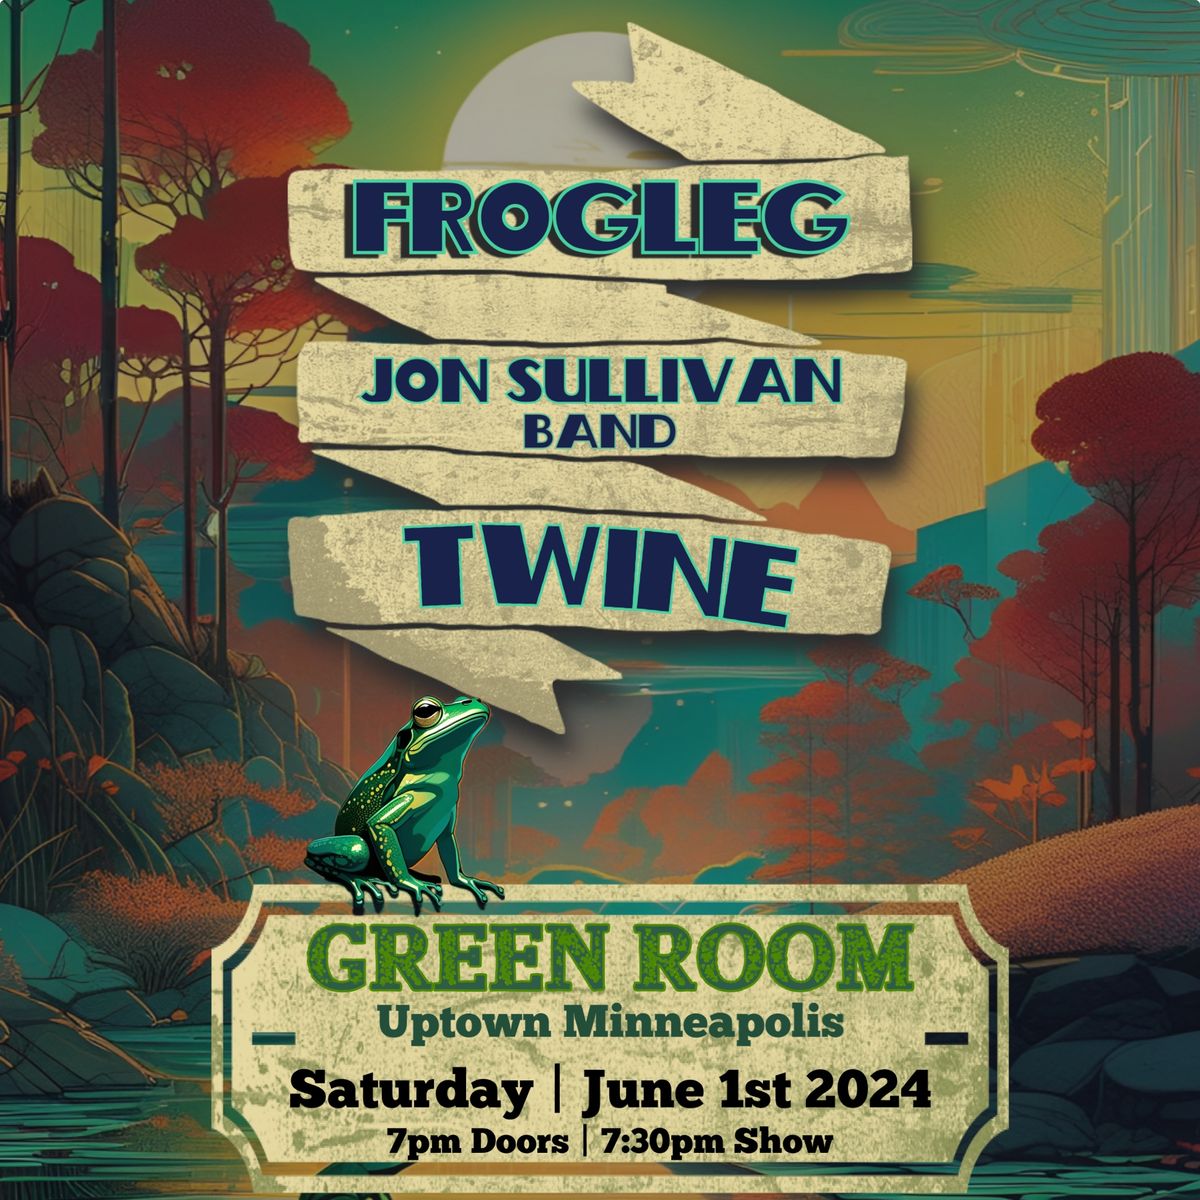 Frogleg \/ Jon Sullivan Band \/ TWINE at The Green Room - Minneapolis